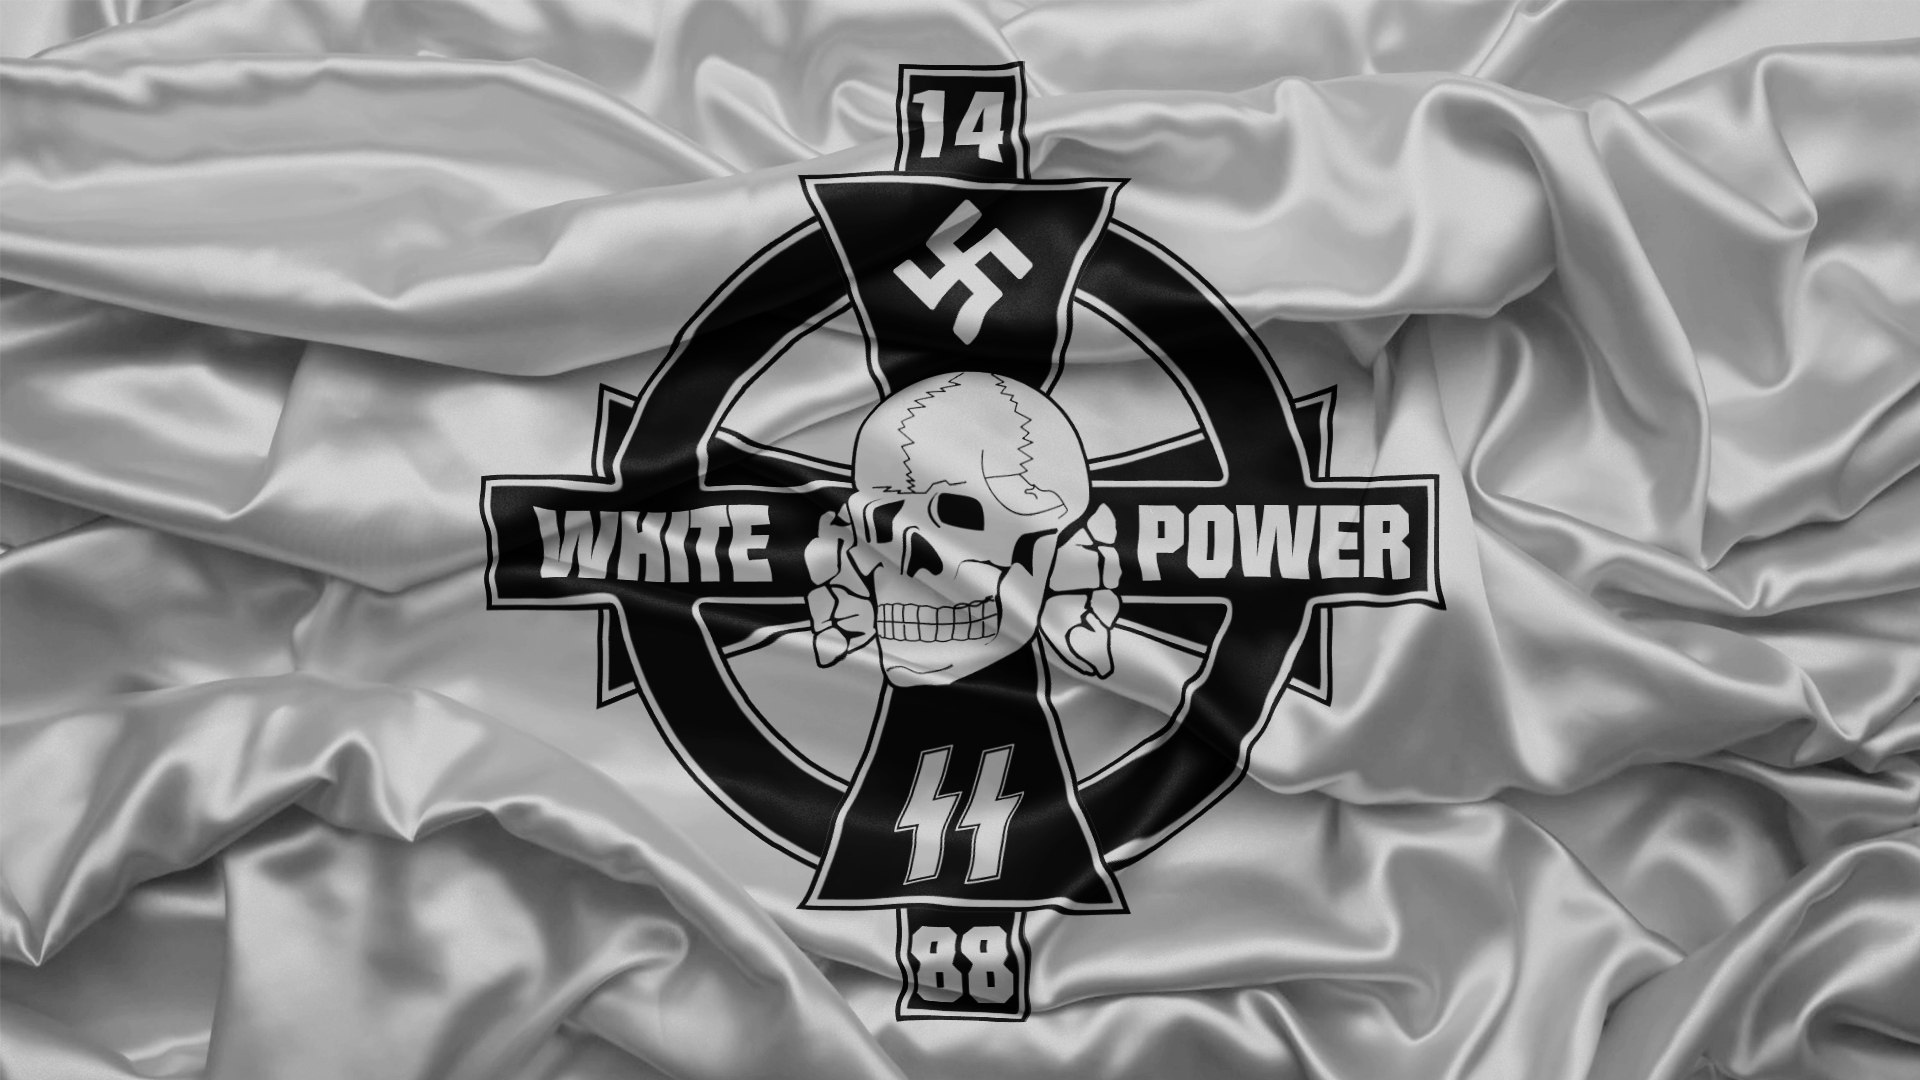 Русь 1488. Вайт Прайд Вайт Пауэр. White Power скинхед. Флаг White Power. Символ White Power.